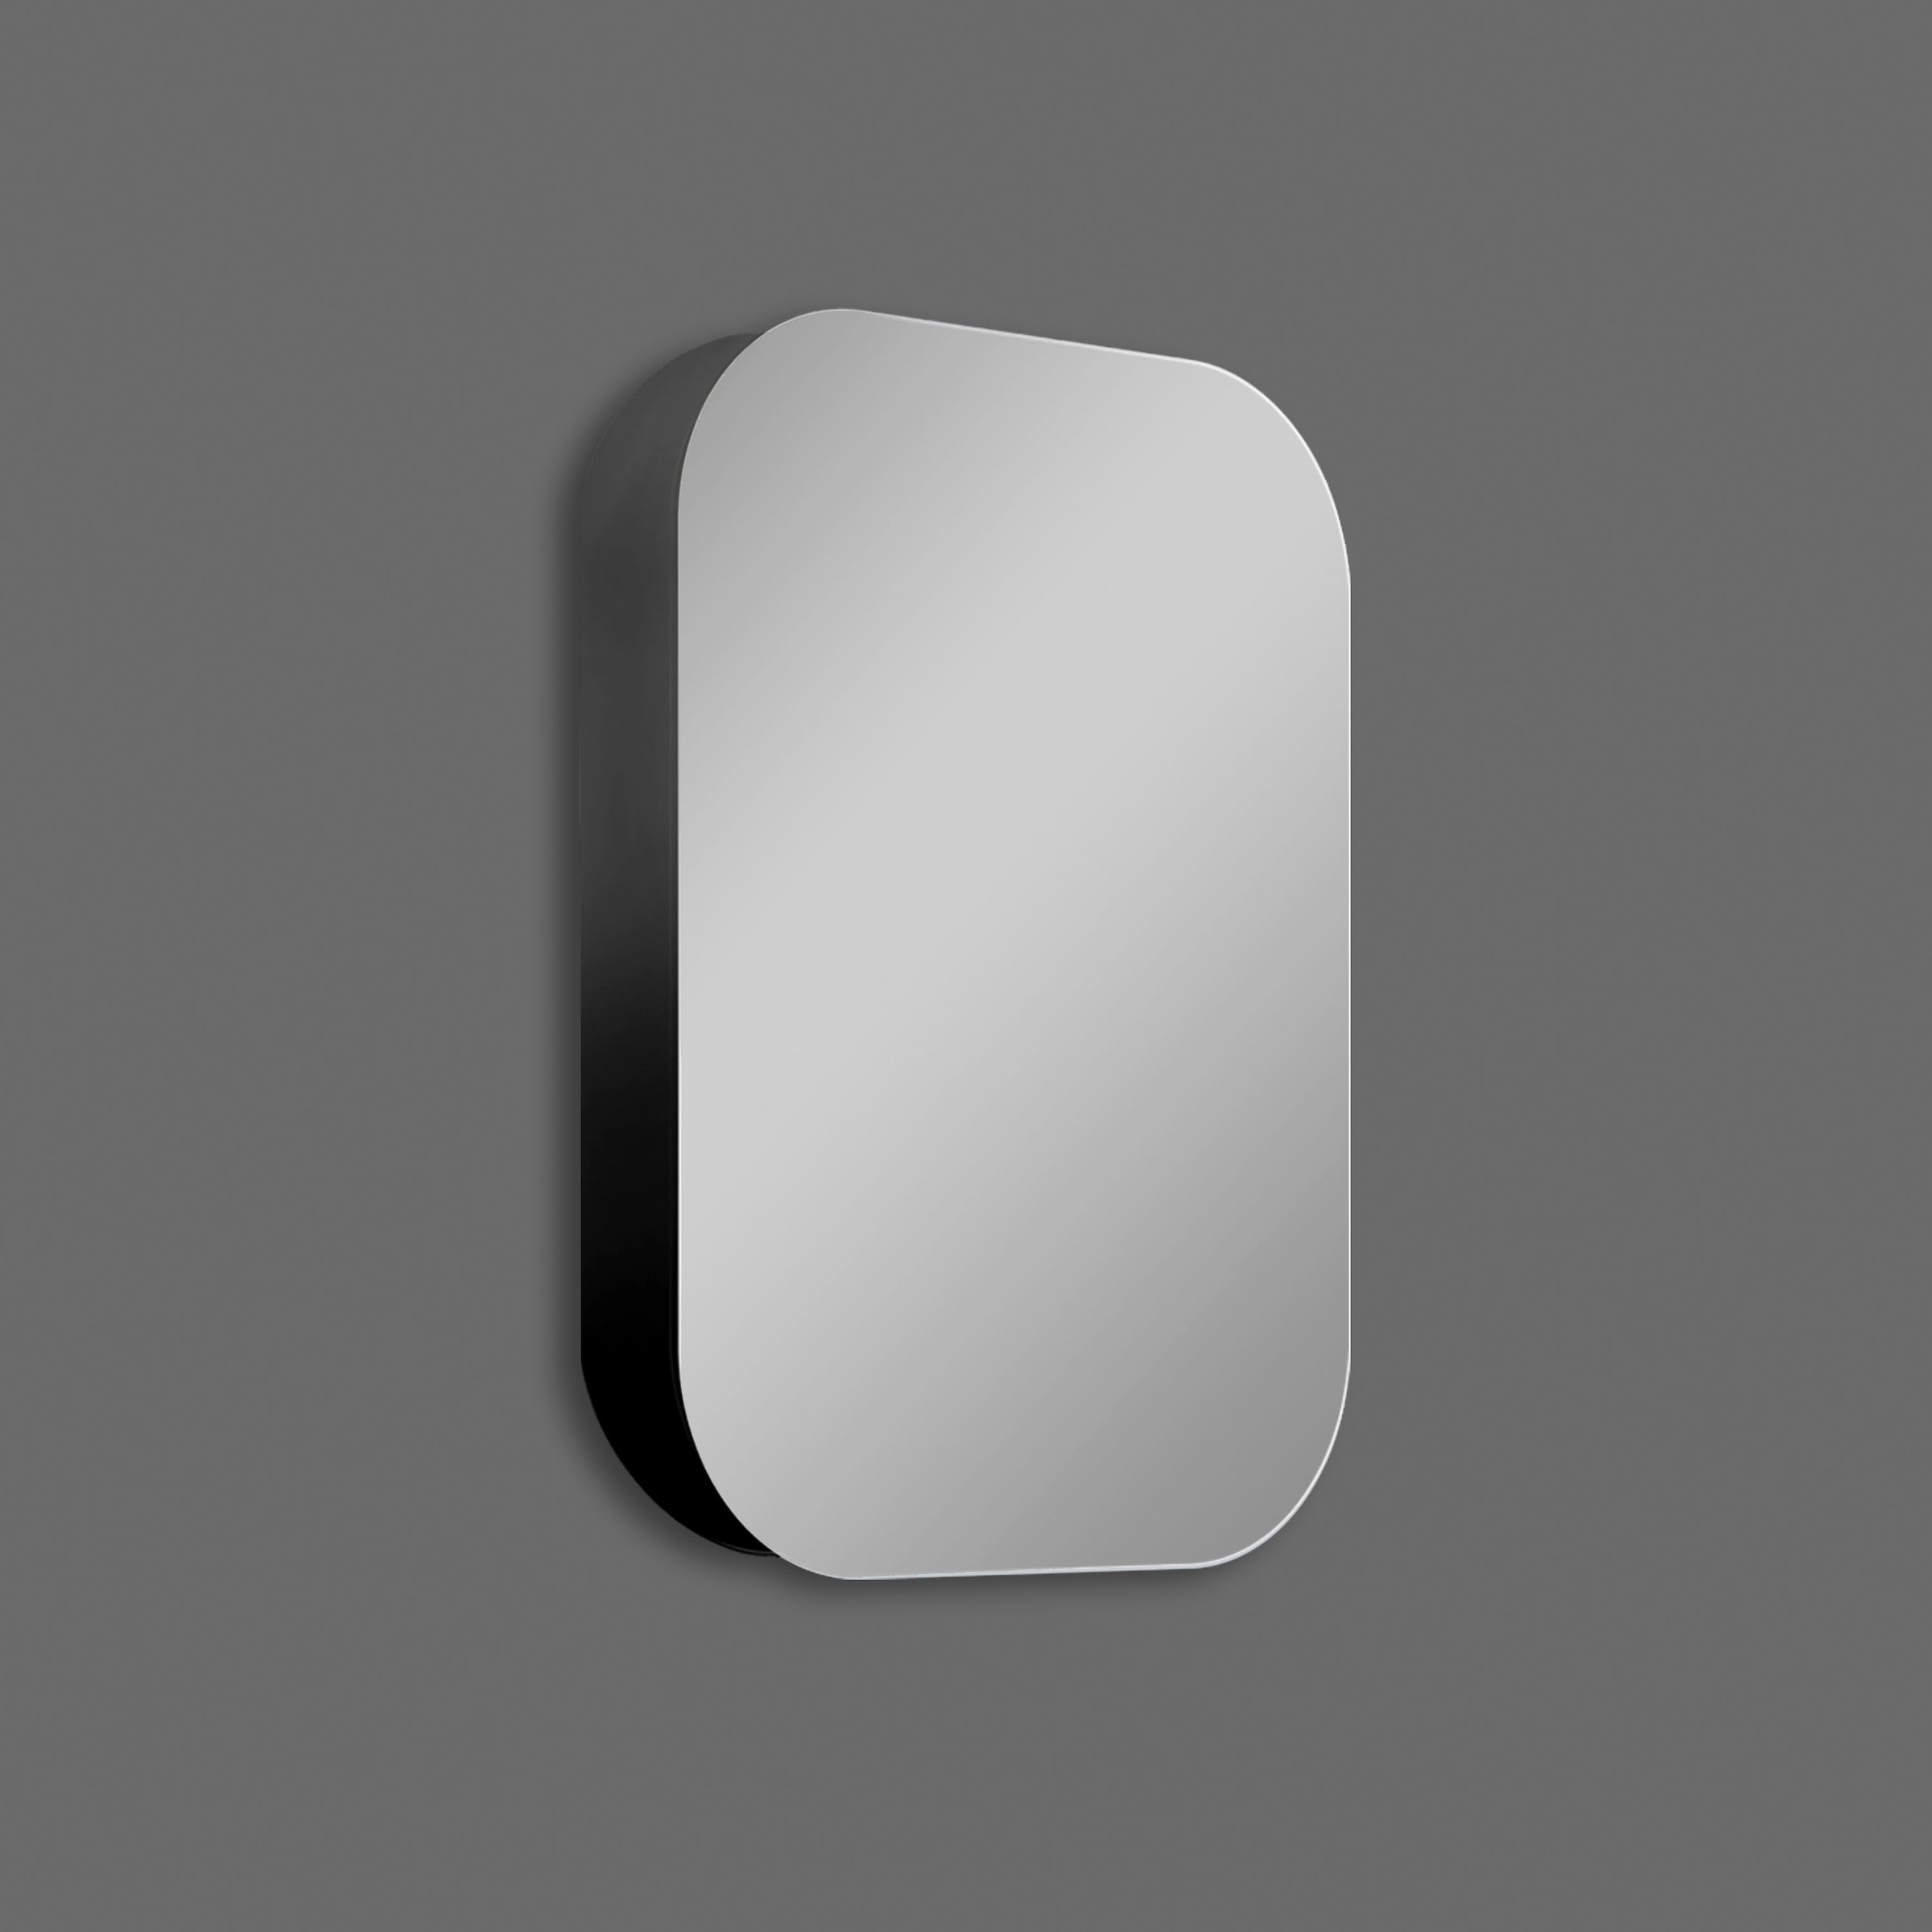 Badezimmerspiegelschrank, oval, BxH: 40x60 cm, aus Alumunium und Echtglas, IP24, schwarz